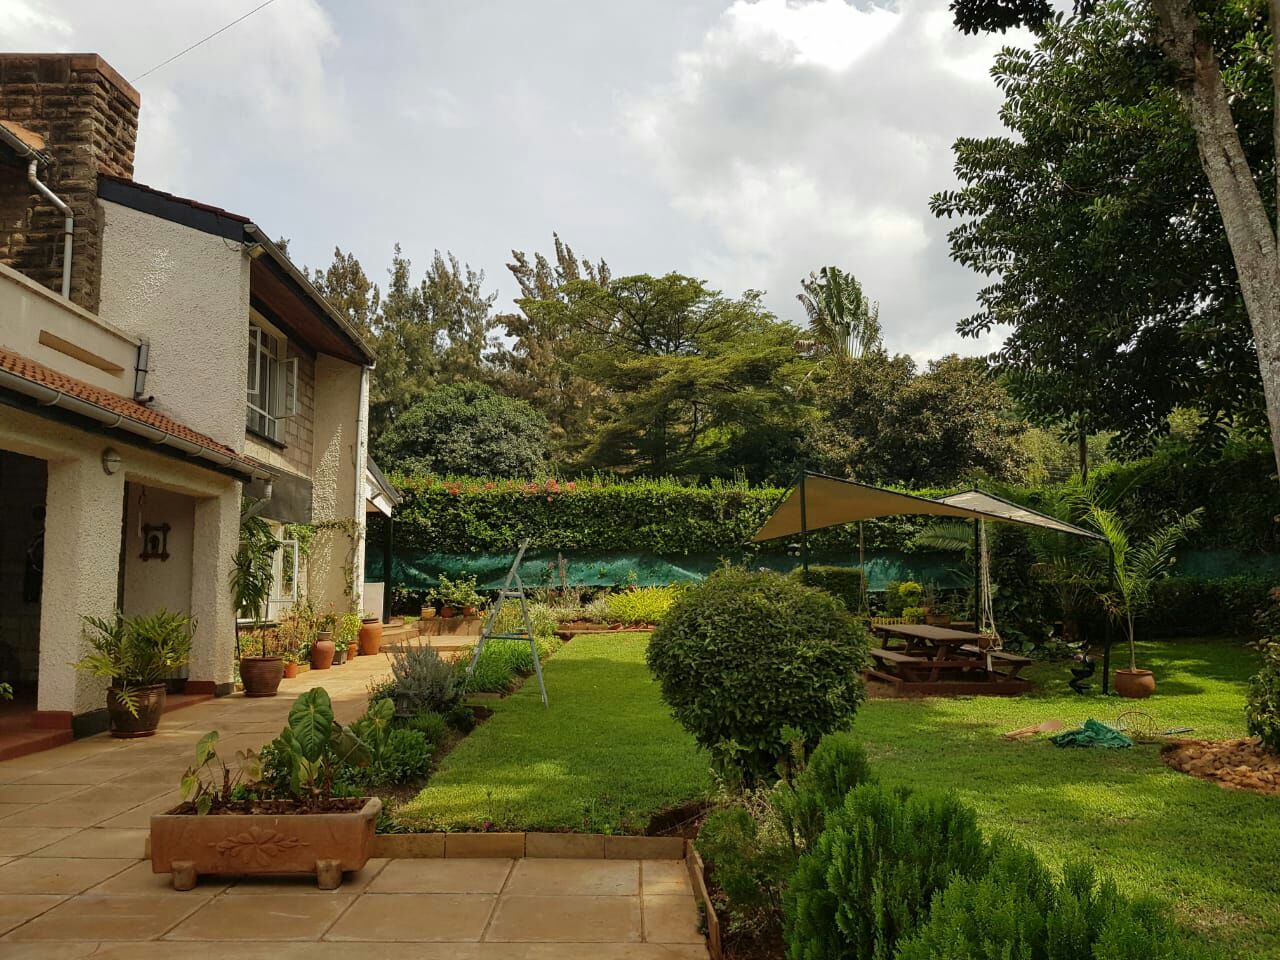 LORESHO NAIROBI 4BR OWN COMPOUND PRESTIGIOUS HOUSE ON QUICK SALE